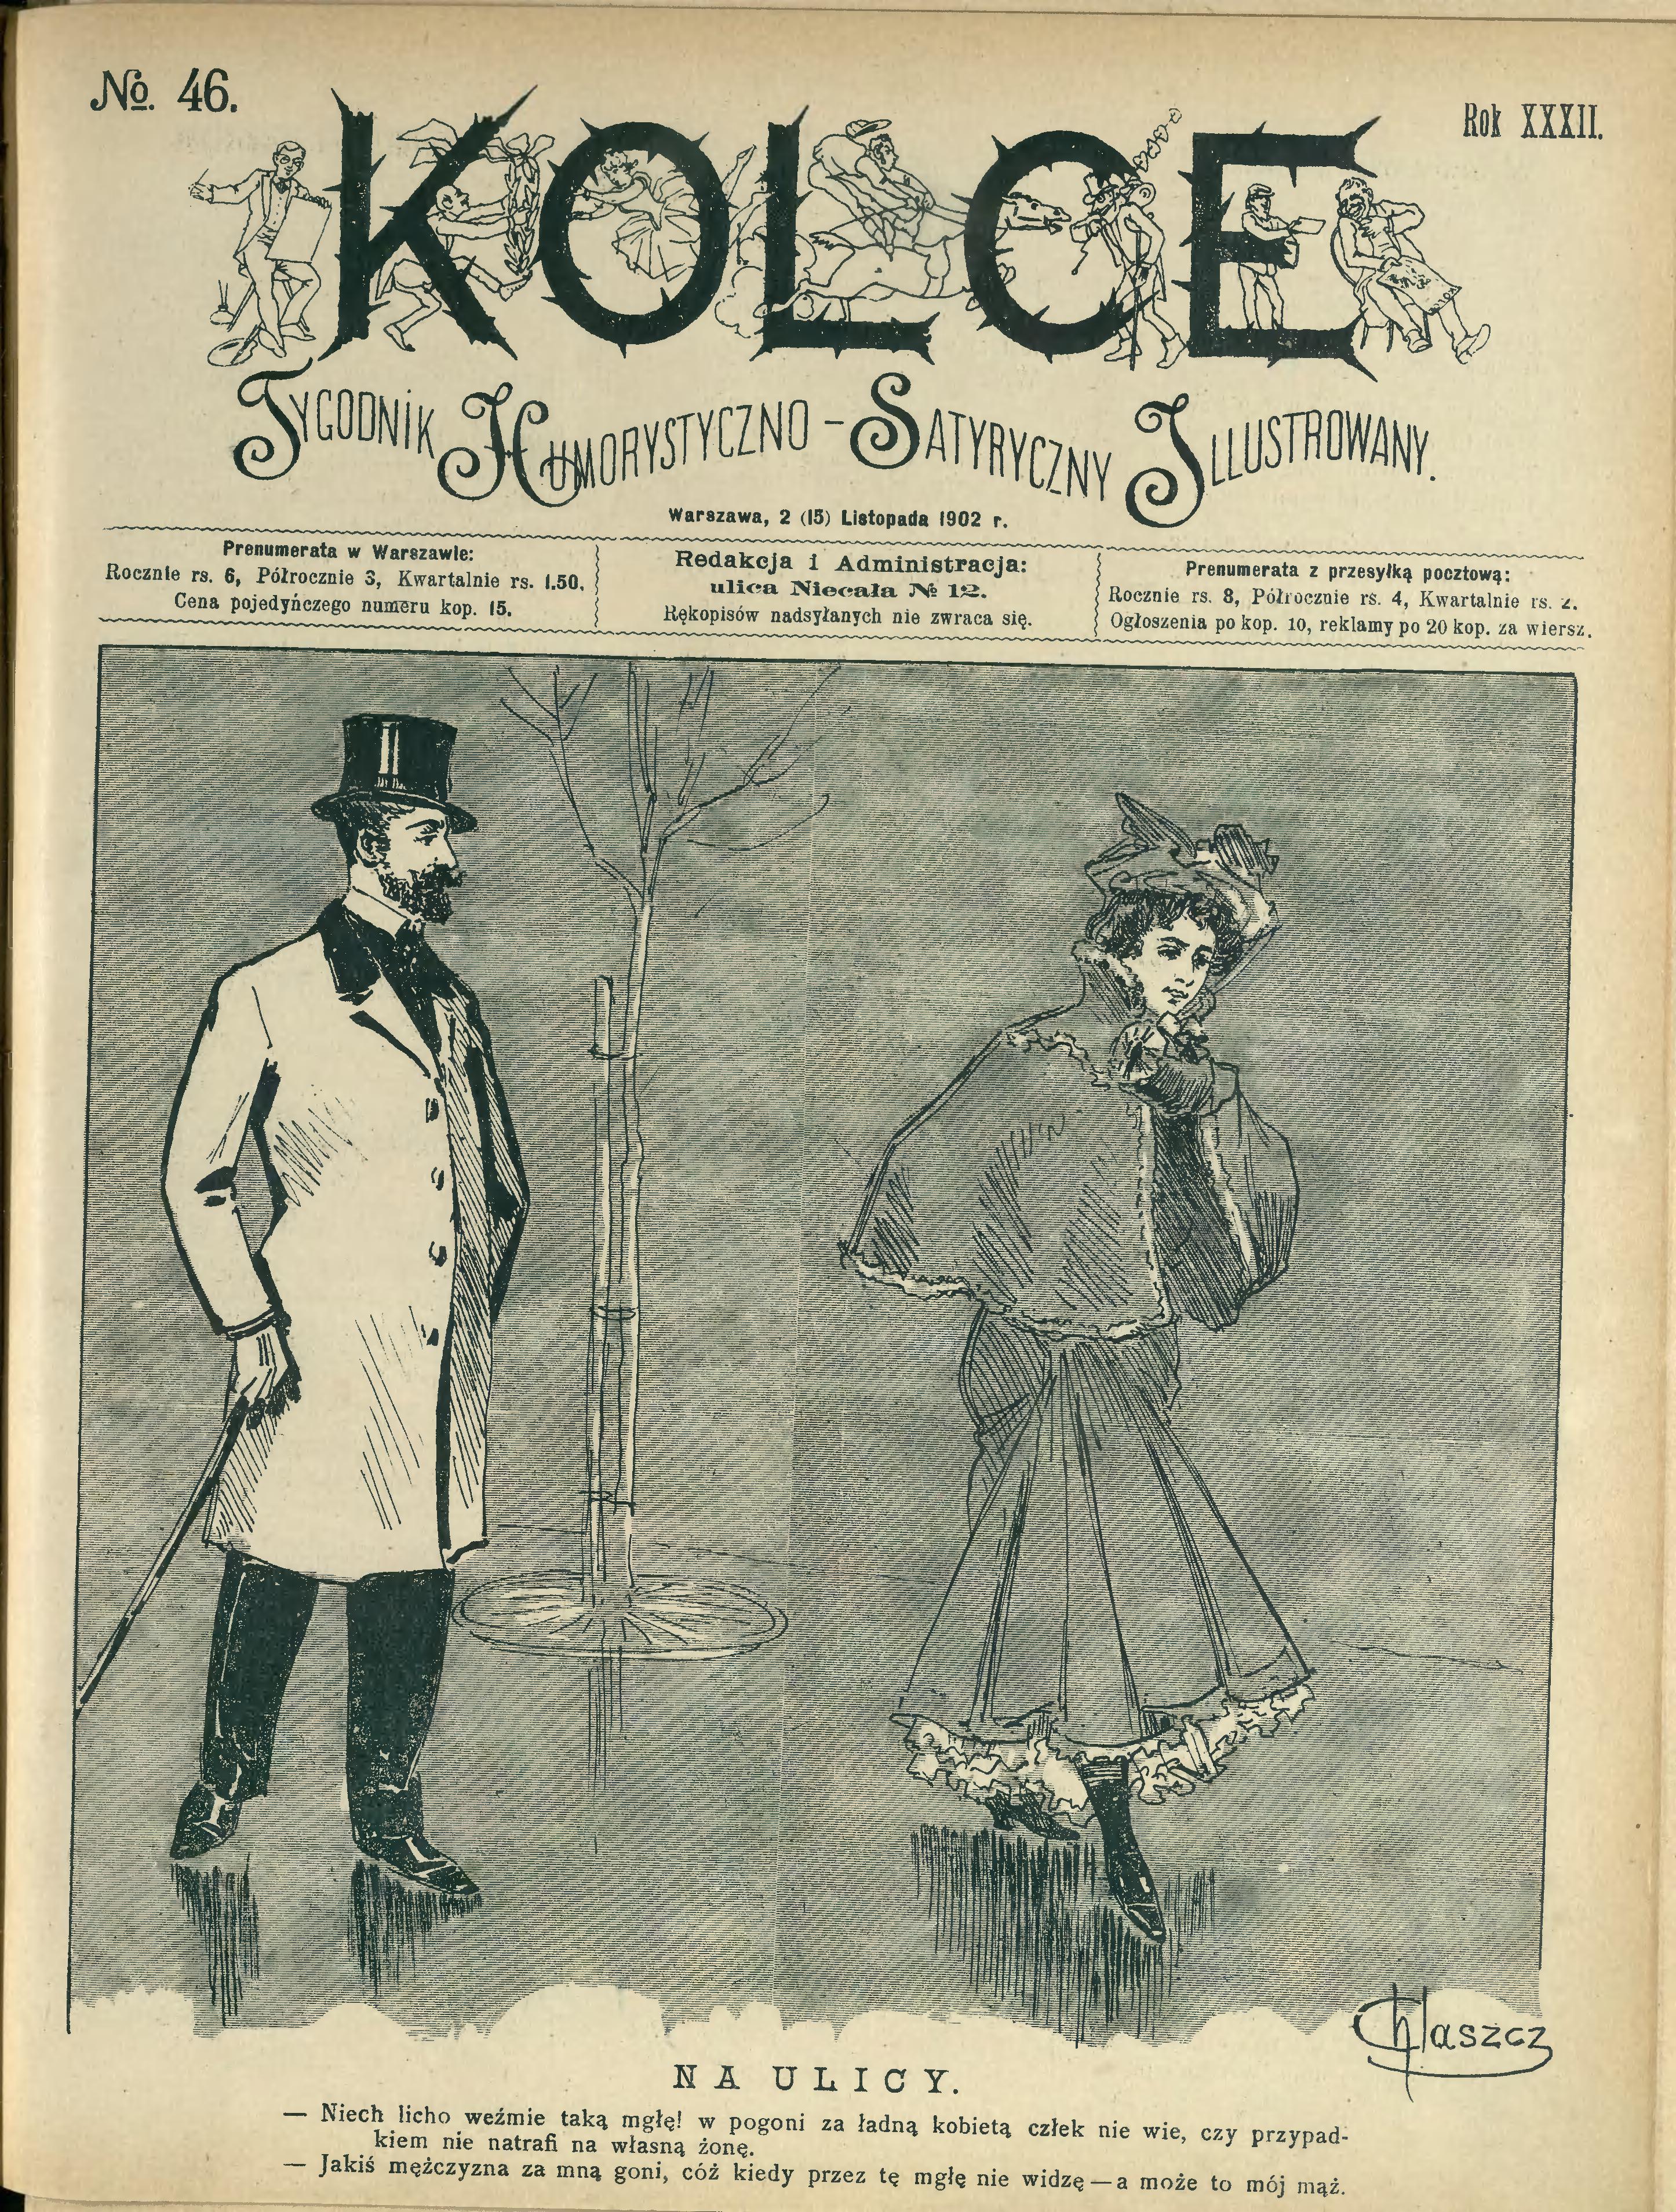 Ilustracje na okładkach czasopisma „Kolce” z roku 1902, w których publikował Witold Wojtkiewicz, źródło: biblioteka cyfrowa Uniwersytetu Warszawskiego